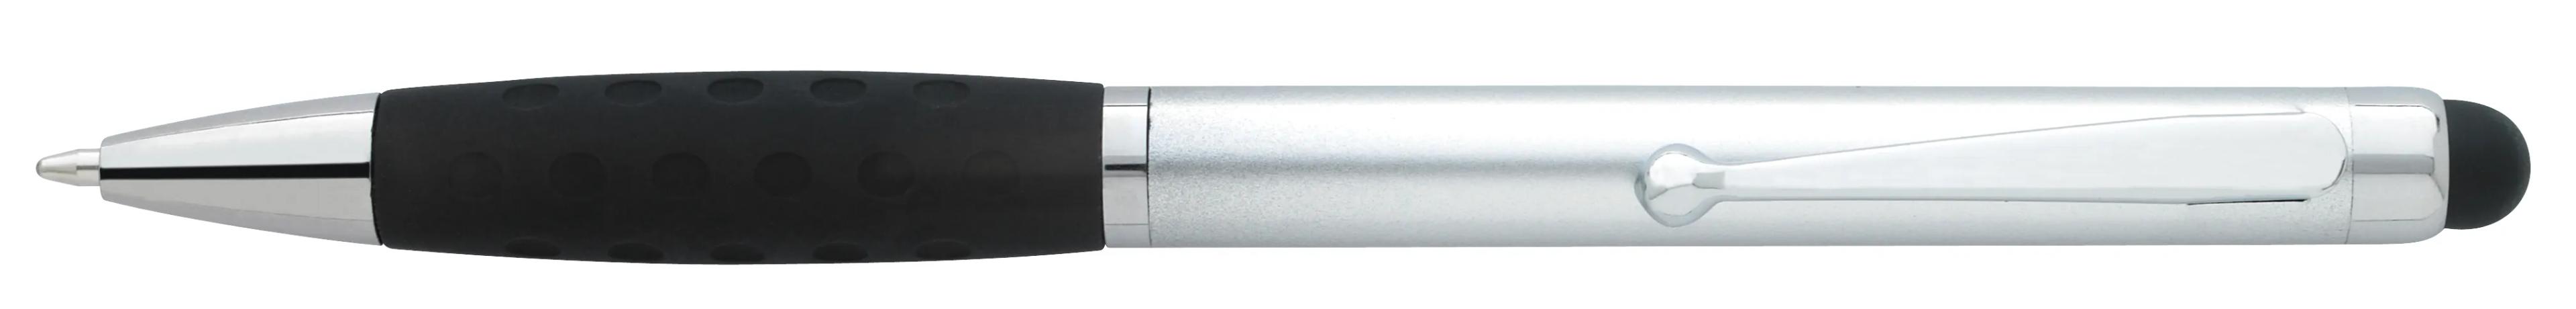 Silver Stylus Grip Pen 3 of 11